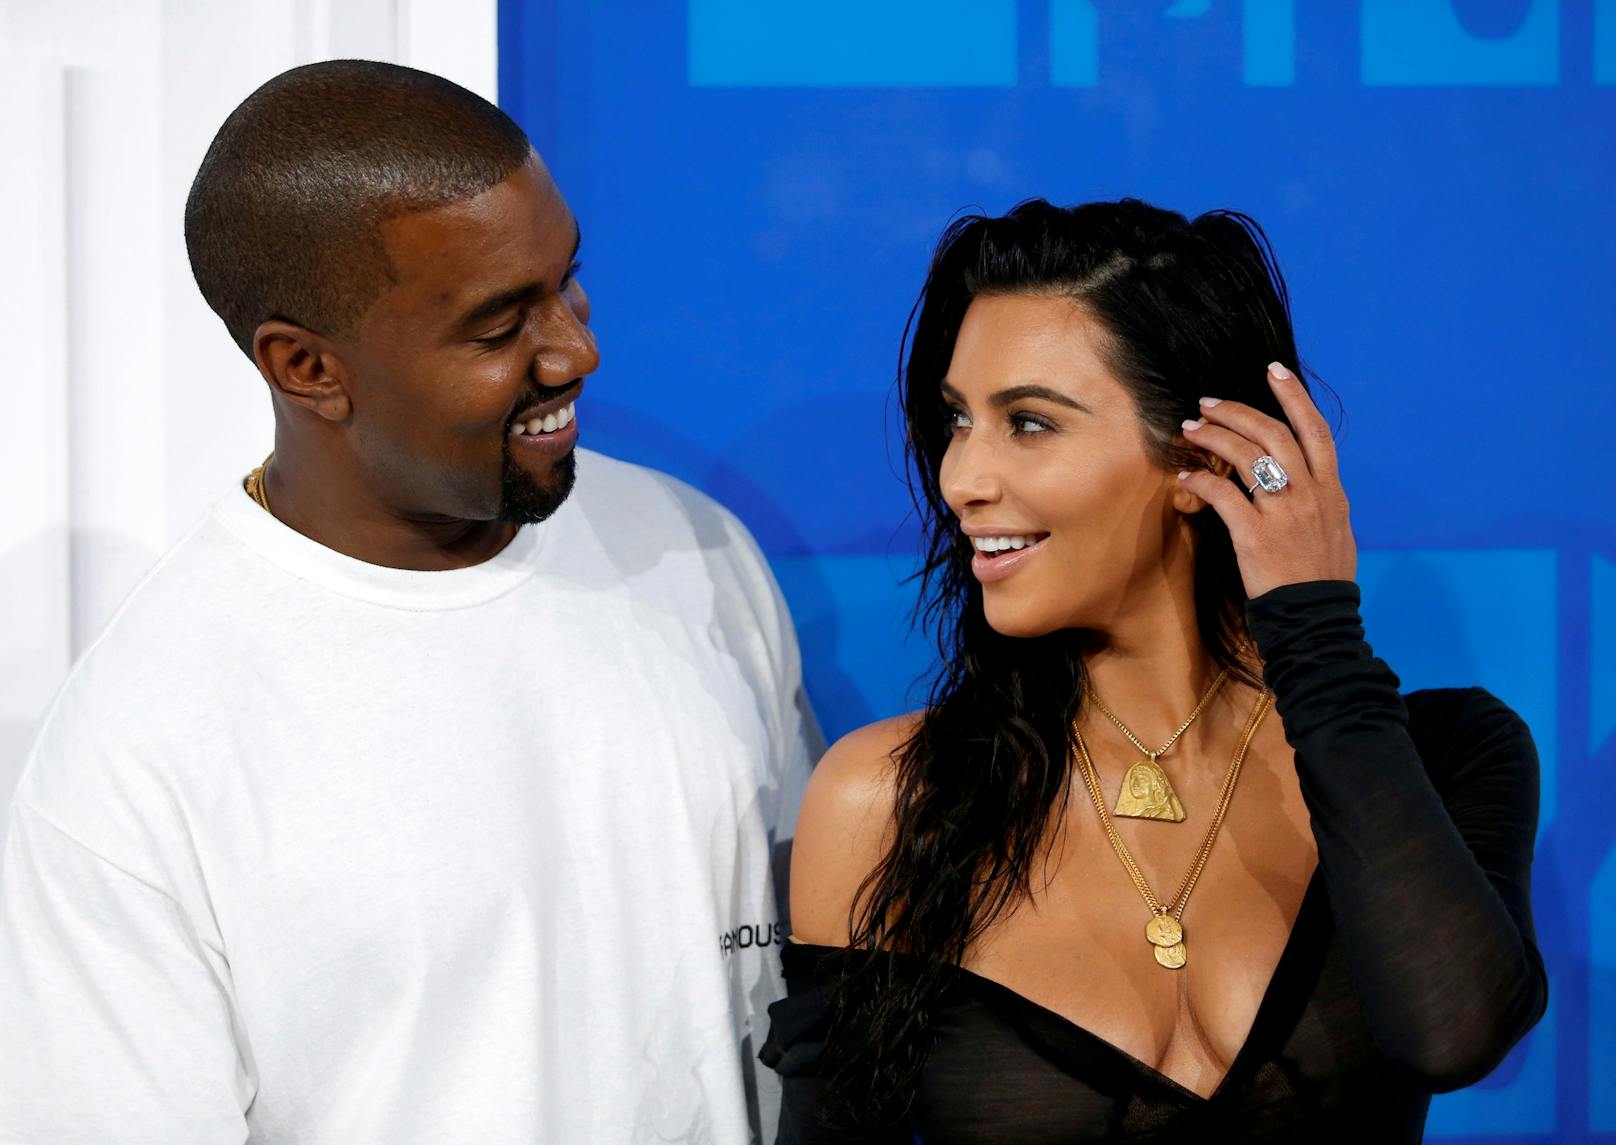 Kim Kardashian und Kanye West begannen 2012 eine Beziehung, die 2014 in einer Ehe mündete. Als Promi-Paar realisierten sie gemeinsam kreative Projekte und bekamen vier Kinder, bevor sie sich 2021 trennten.